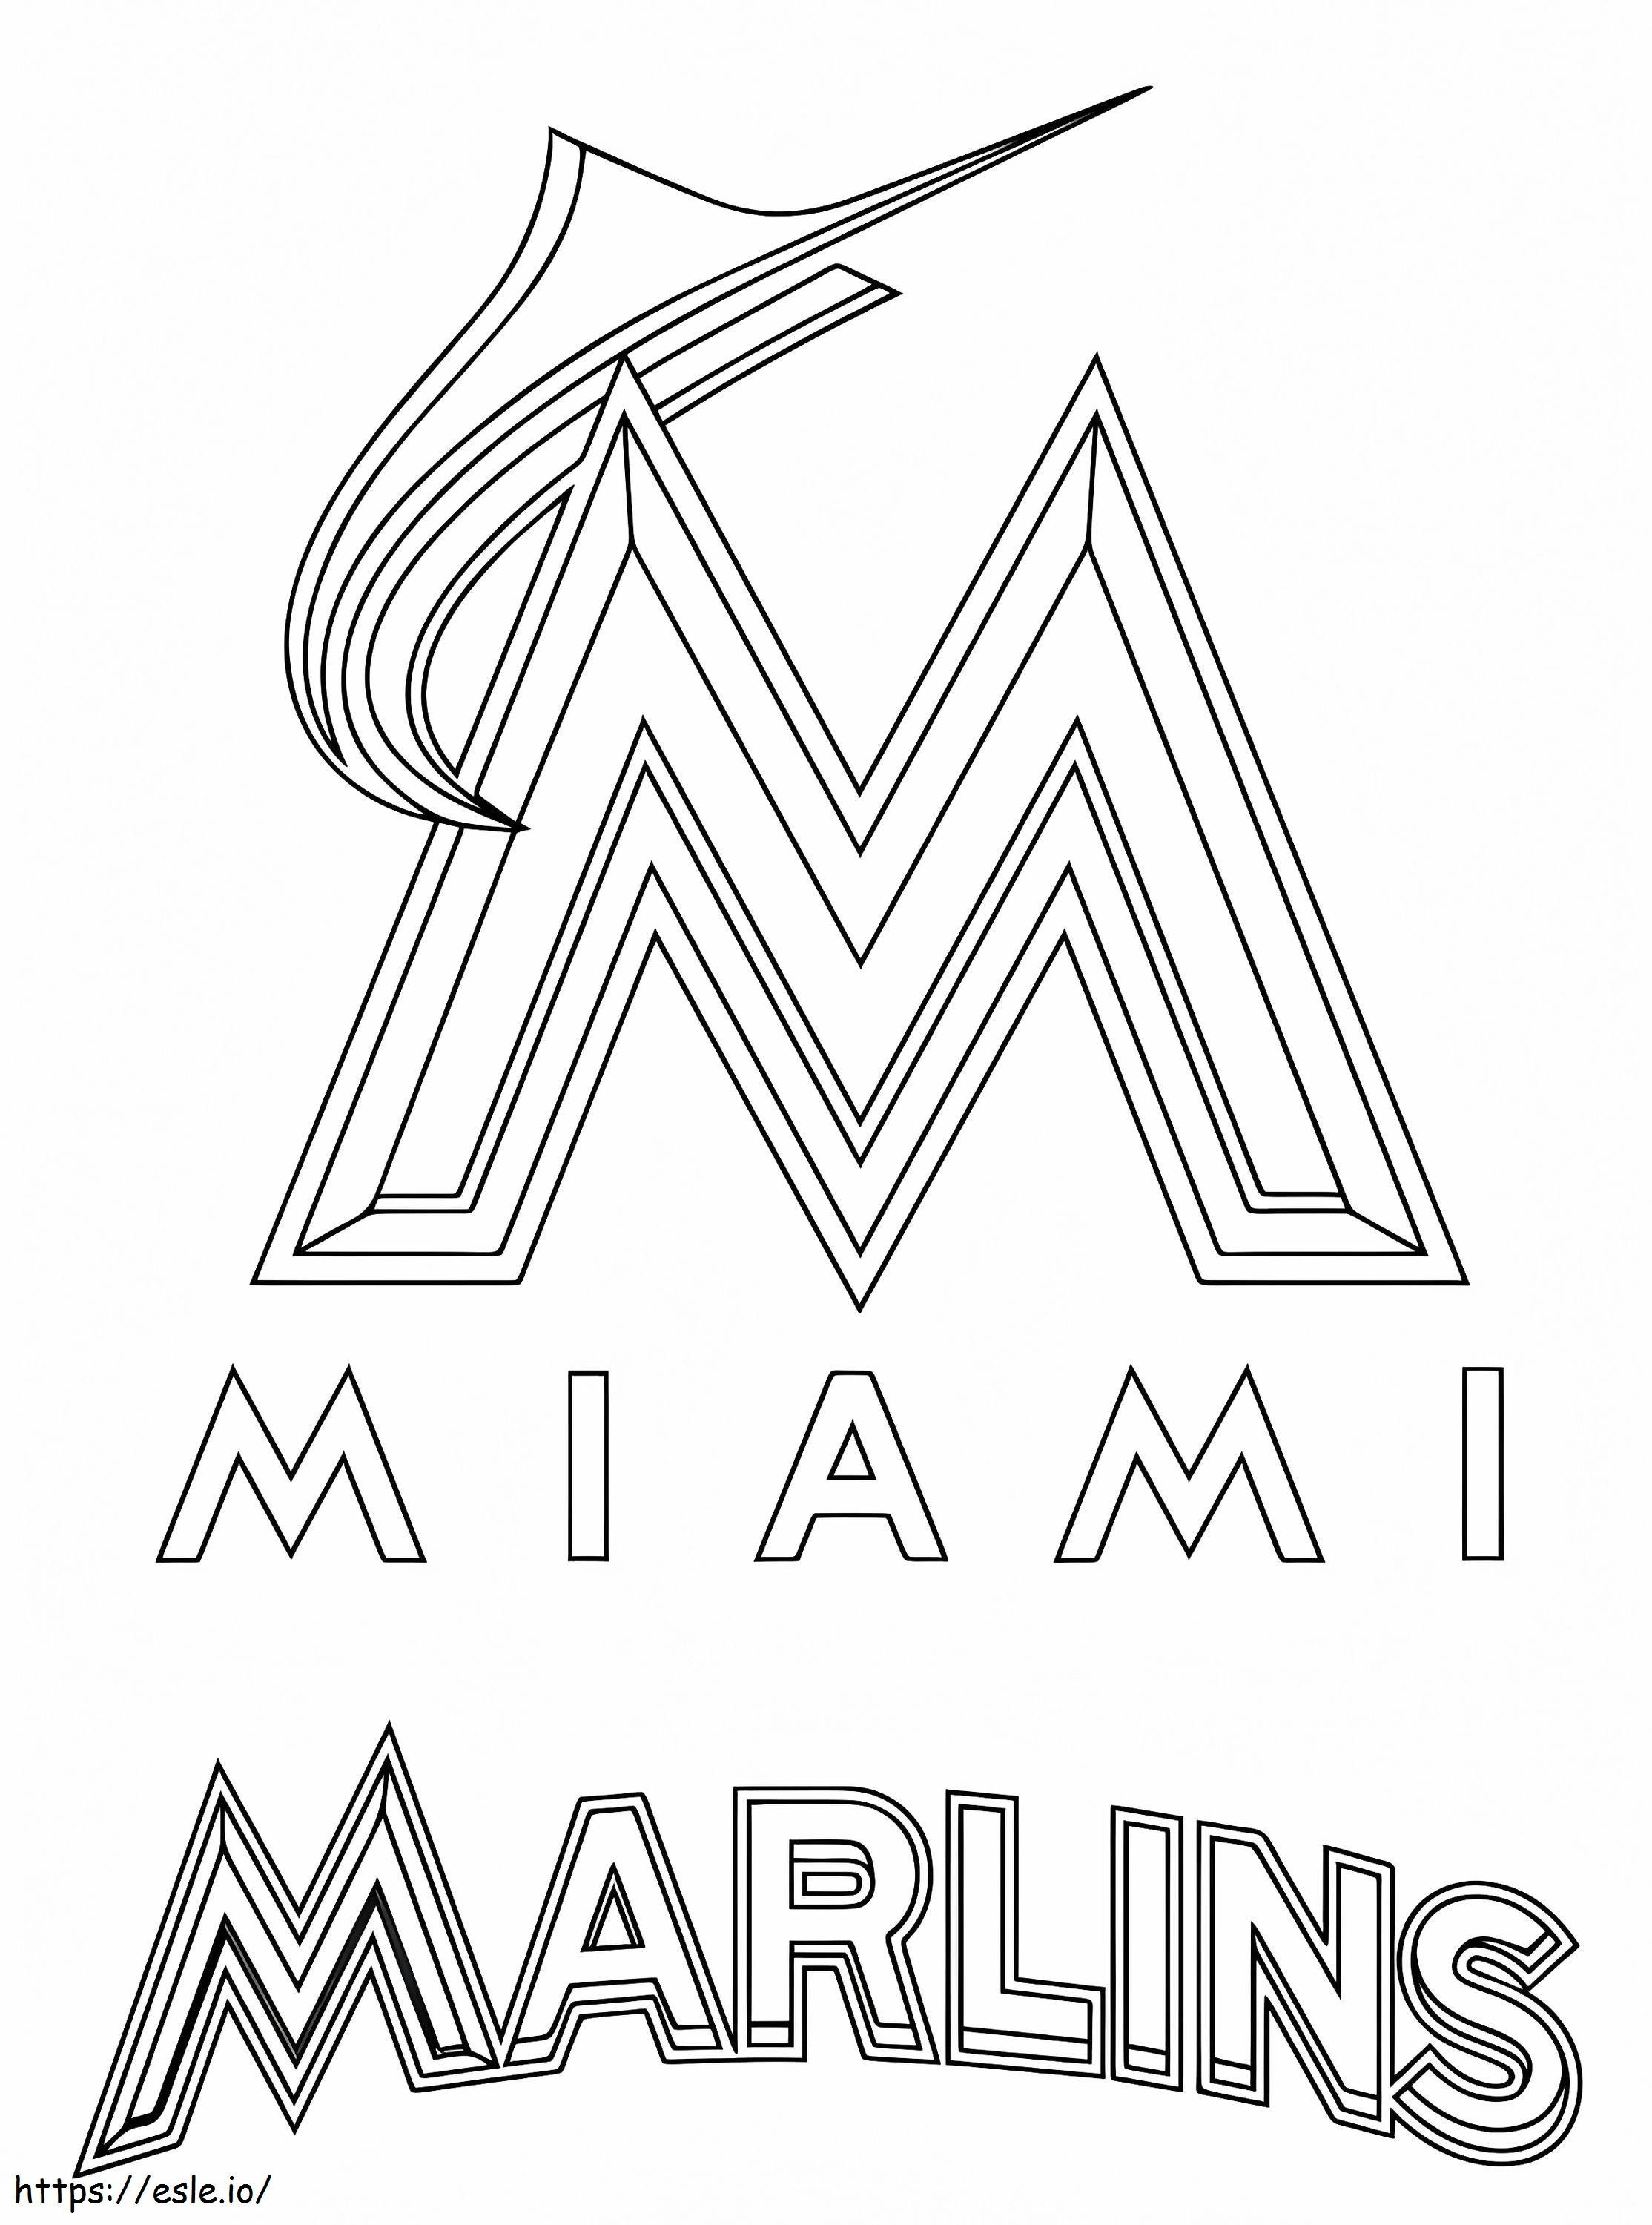 Miami Marlins Logo coloring page